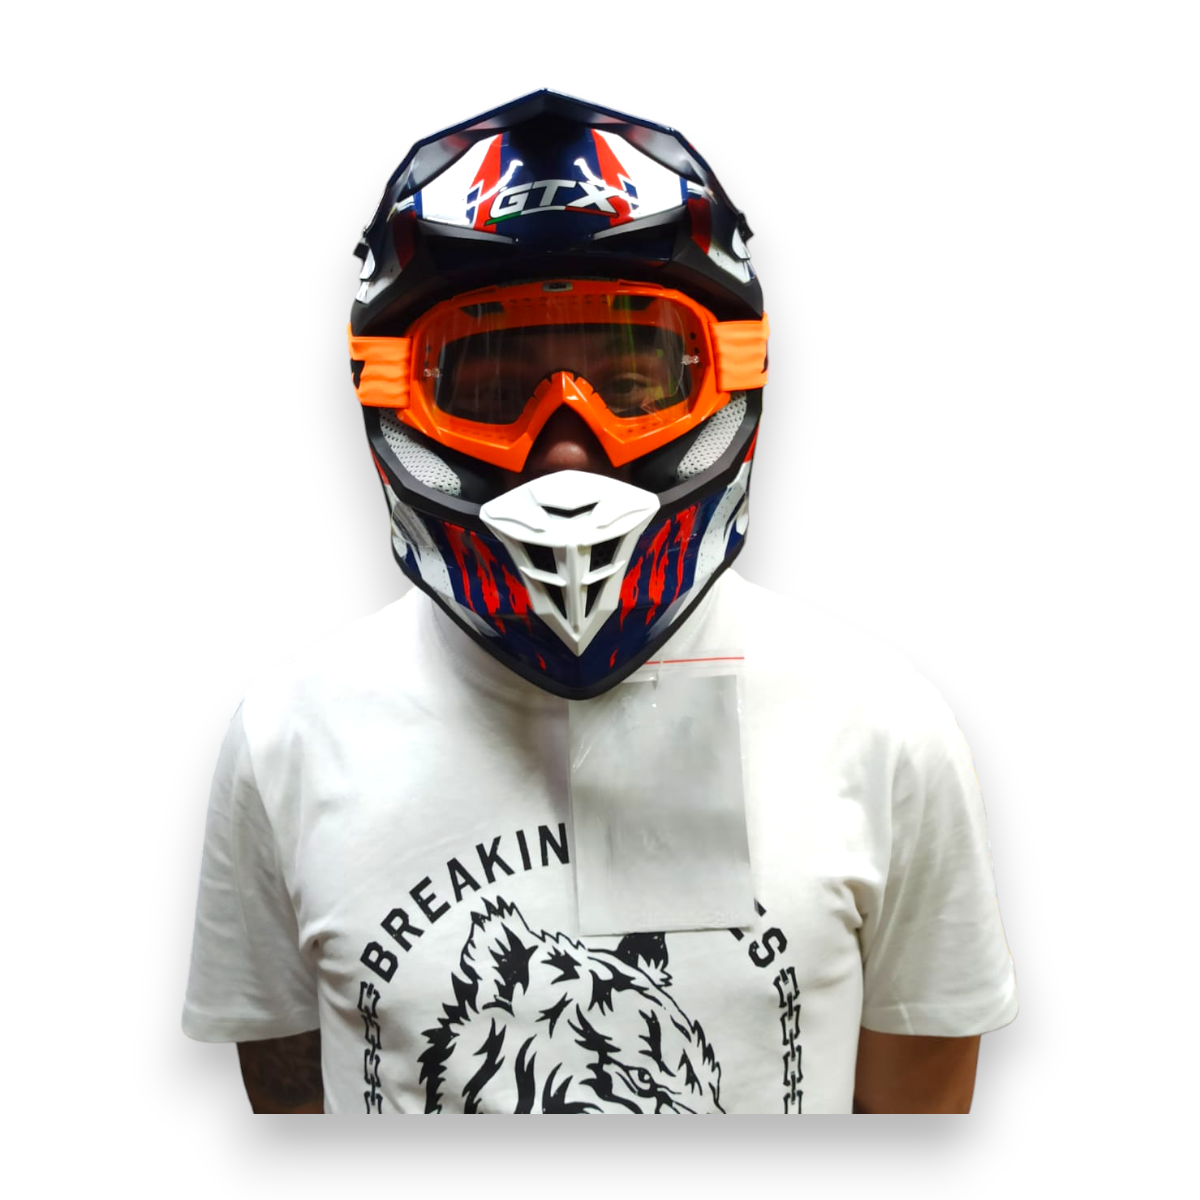 Очки KTM для мотокросса на мото шлем мотоциклиста, прозрачные оранжевые